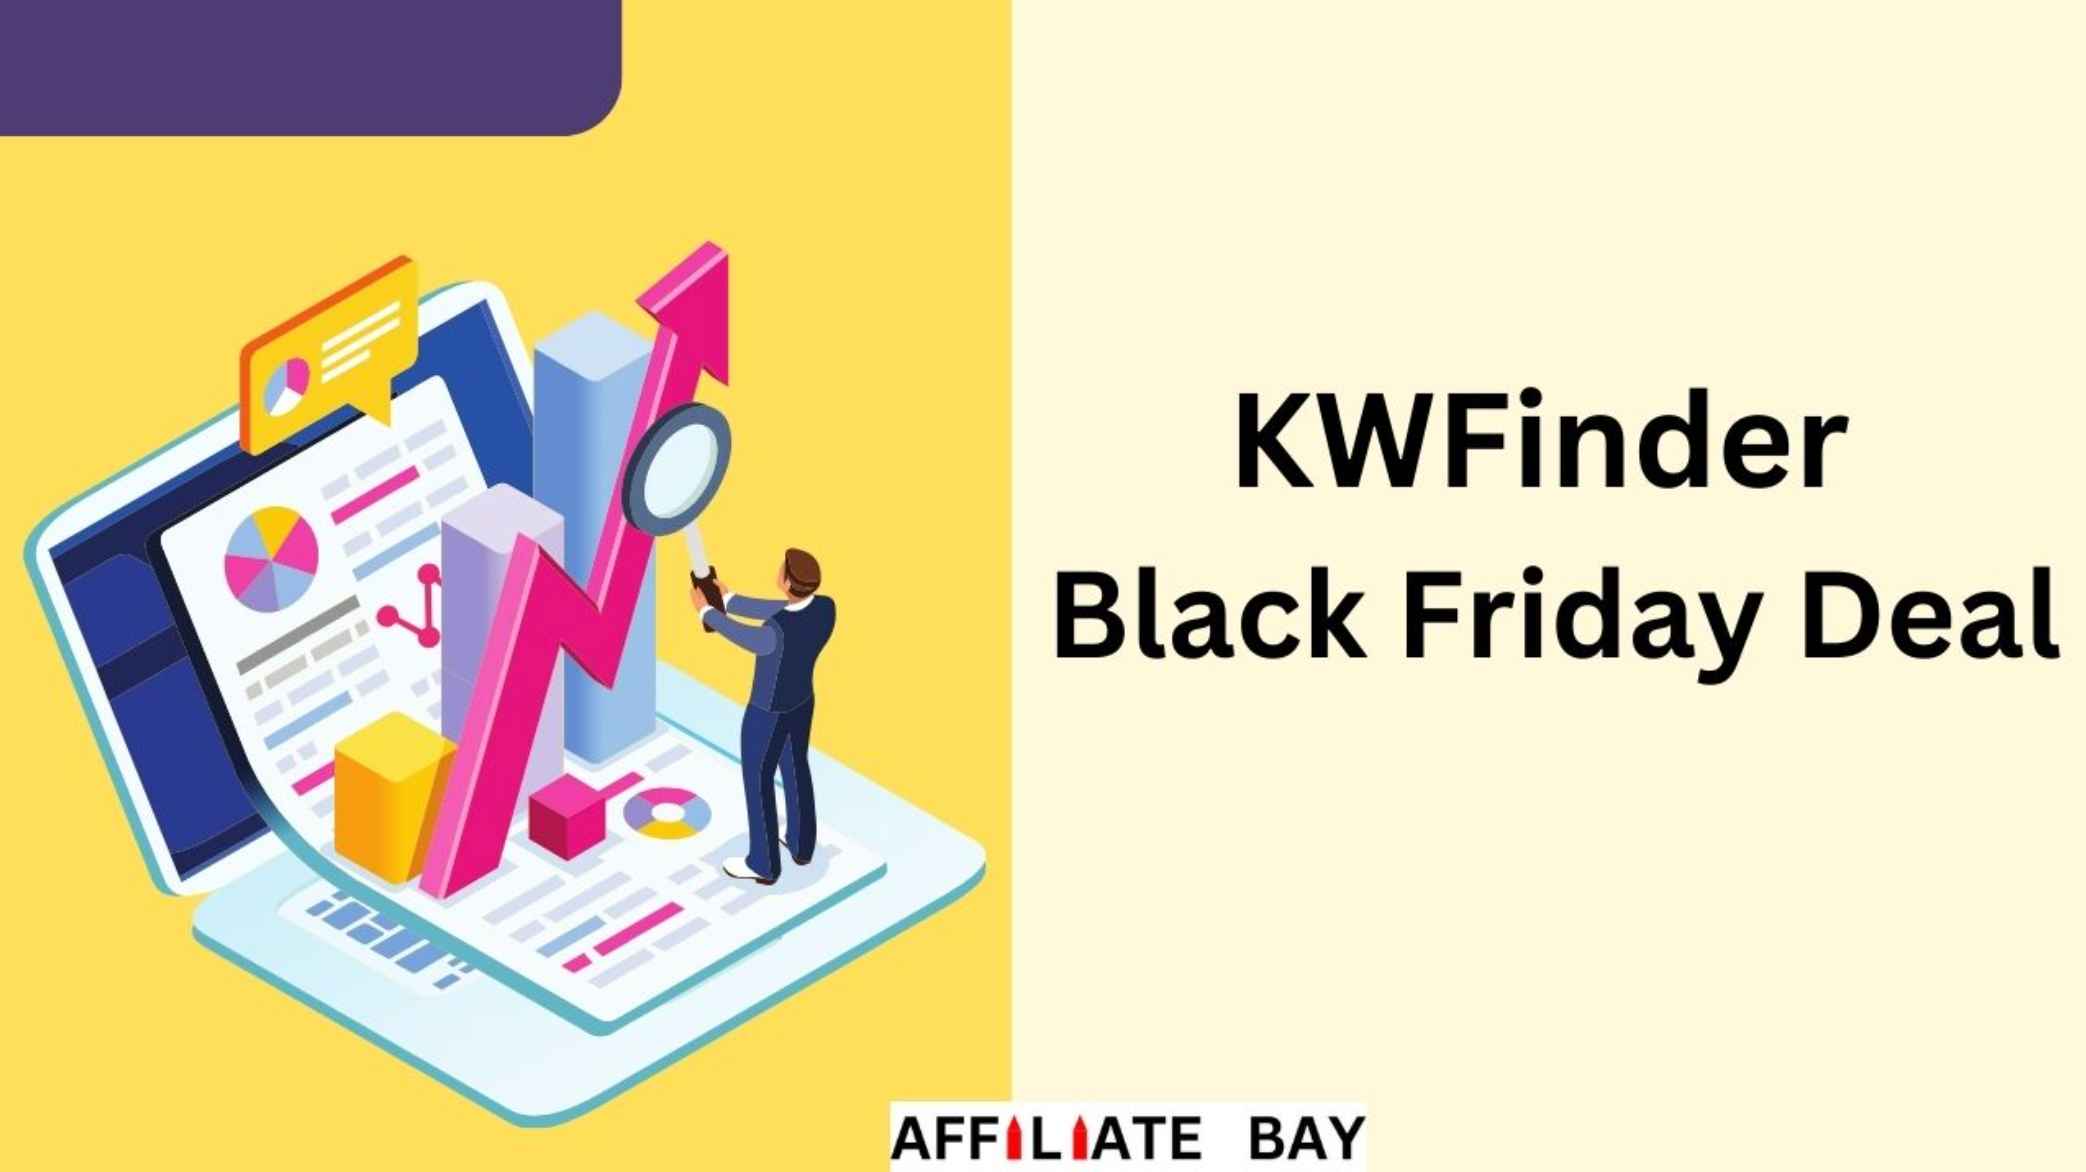 KWFinder Black Friday Deal